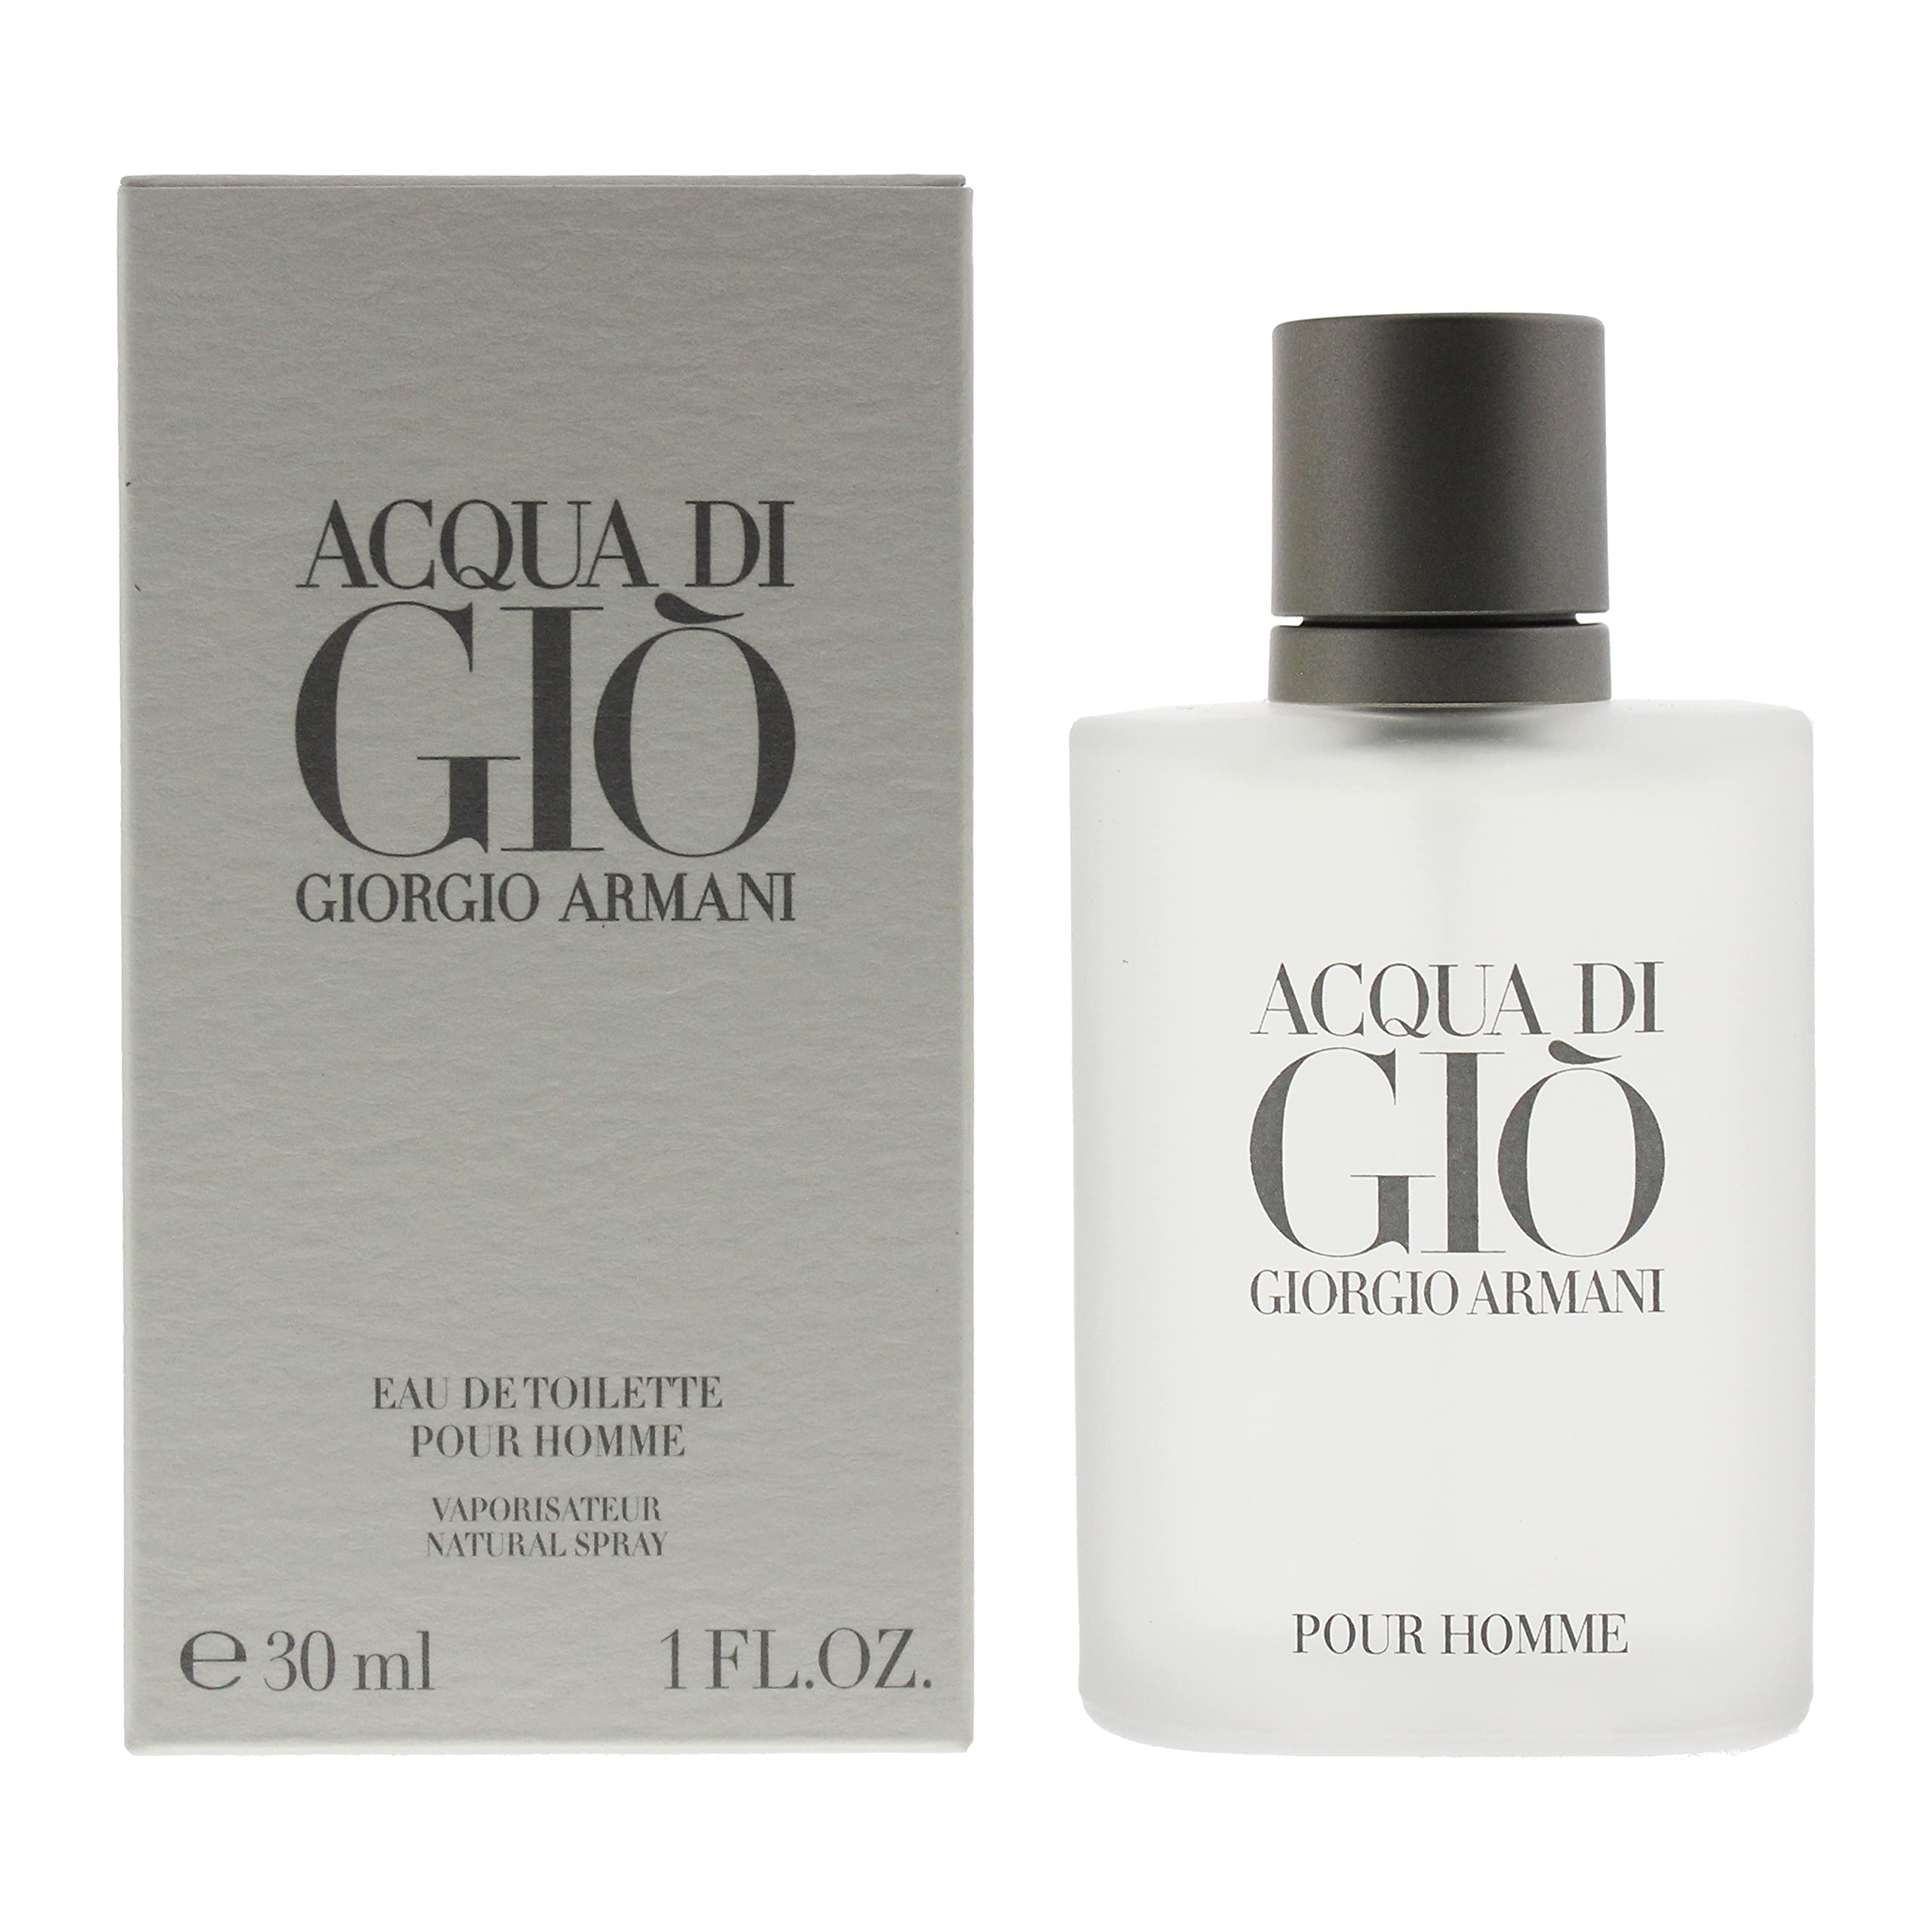 Acqua Di Gio By Giorgio Armani For Men. Eau De Toilette Spray 1.0 Fl Oz